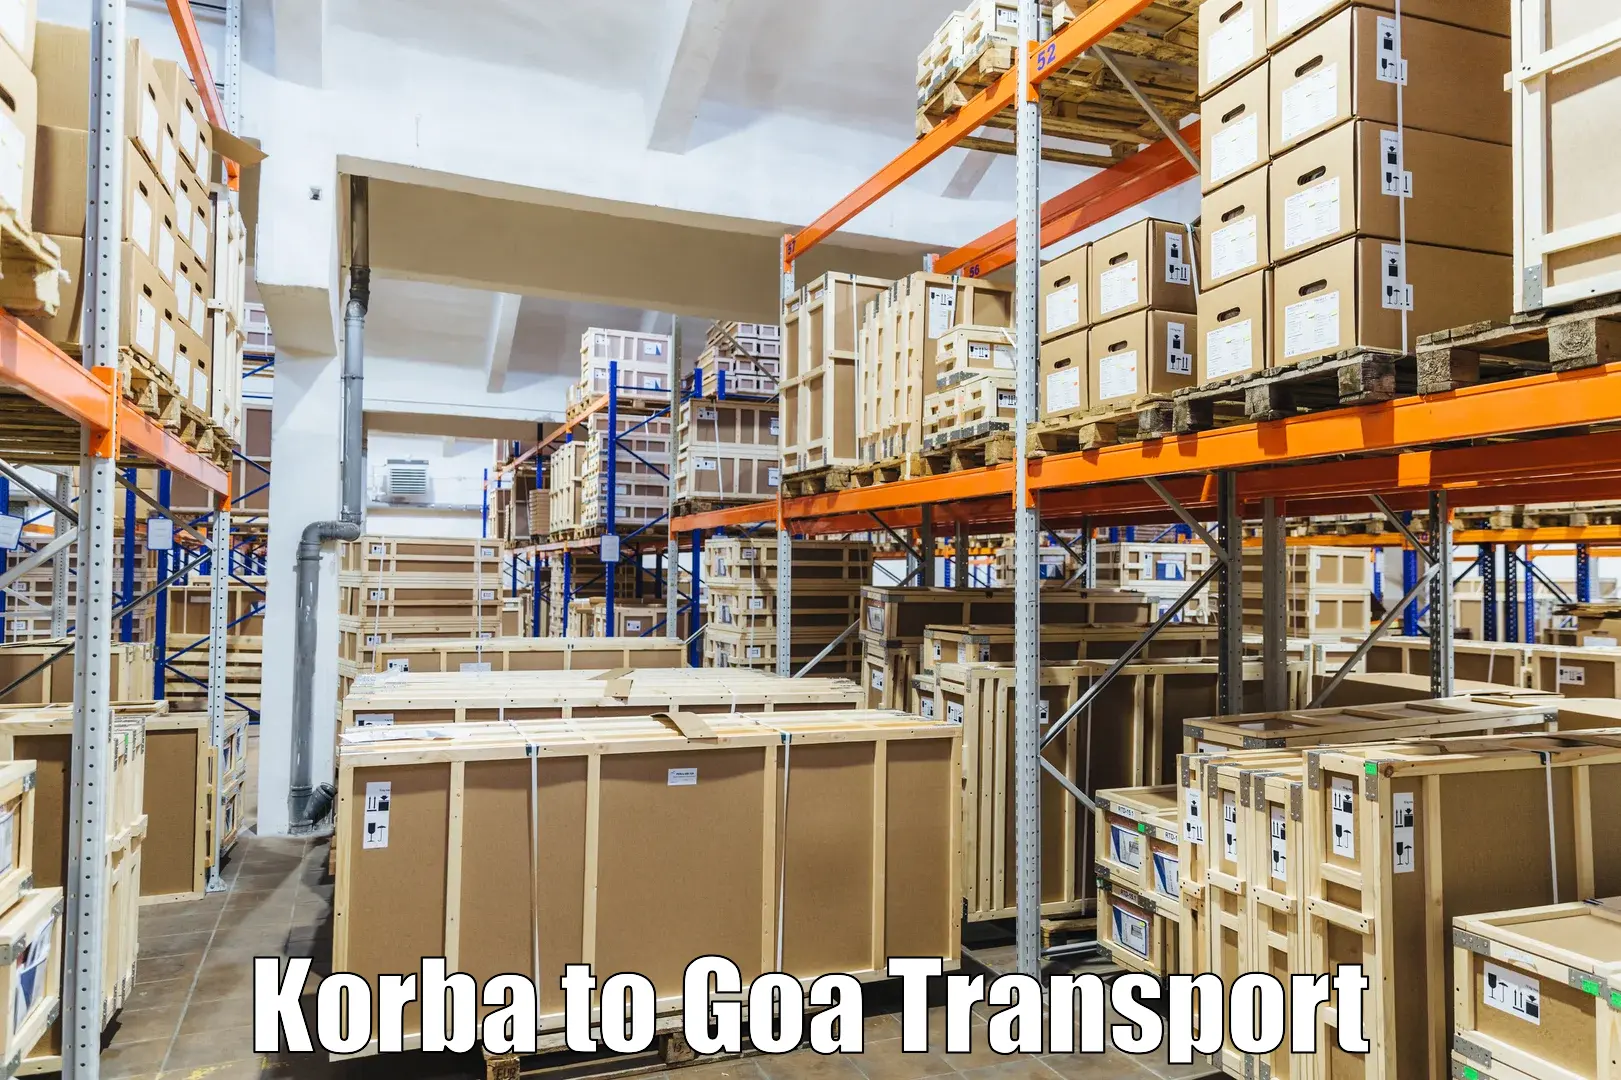 Cargo train transport services in Korba to Canacona